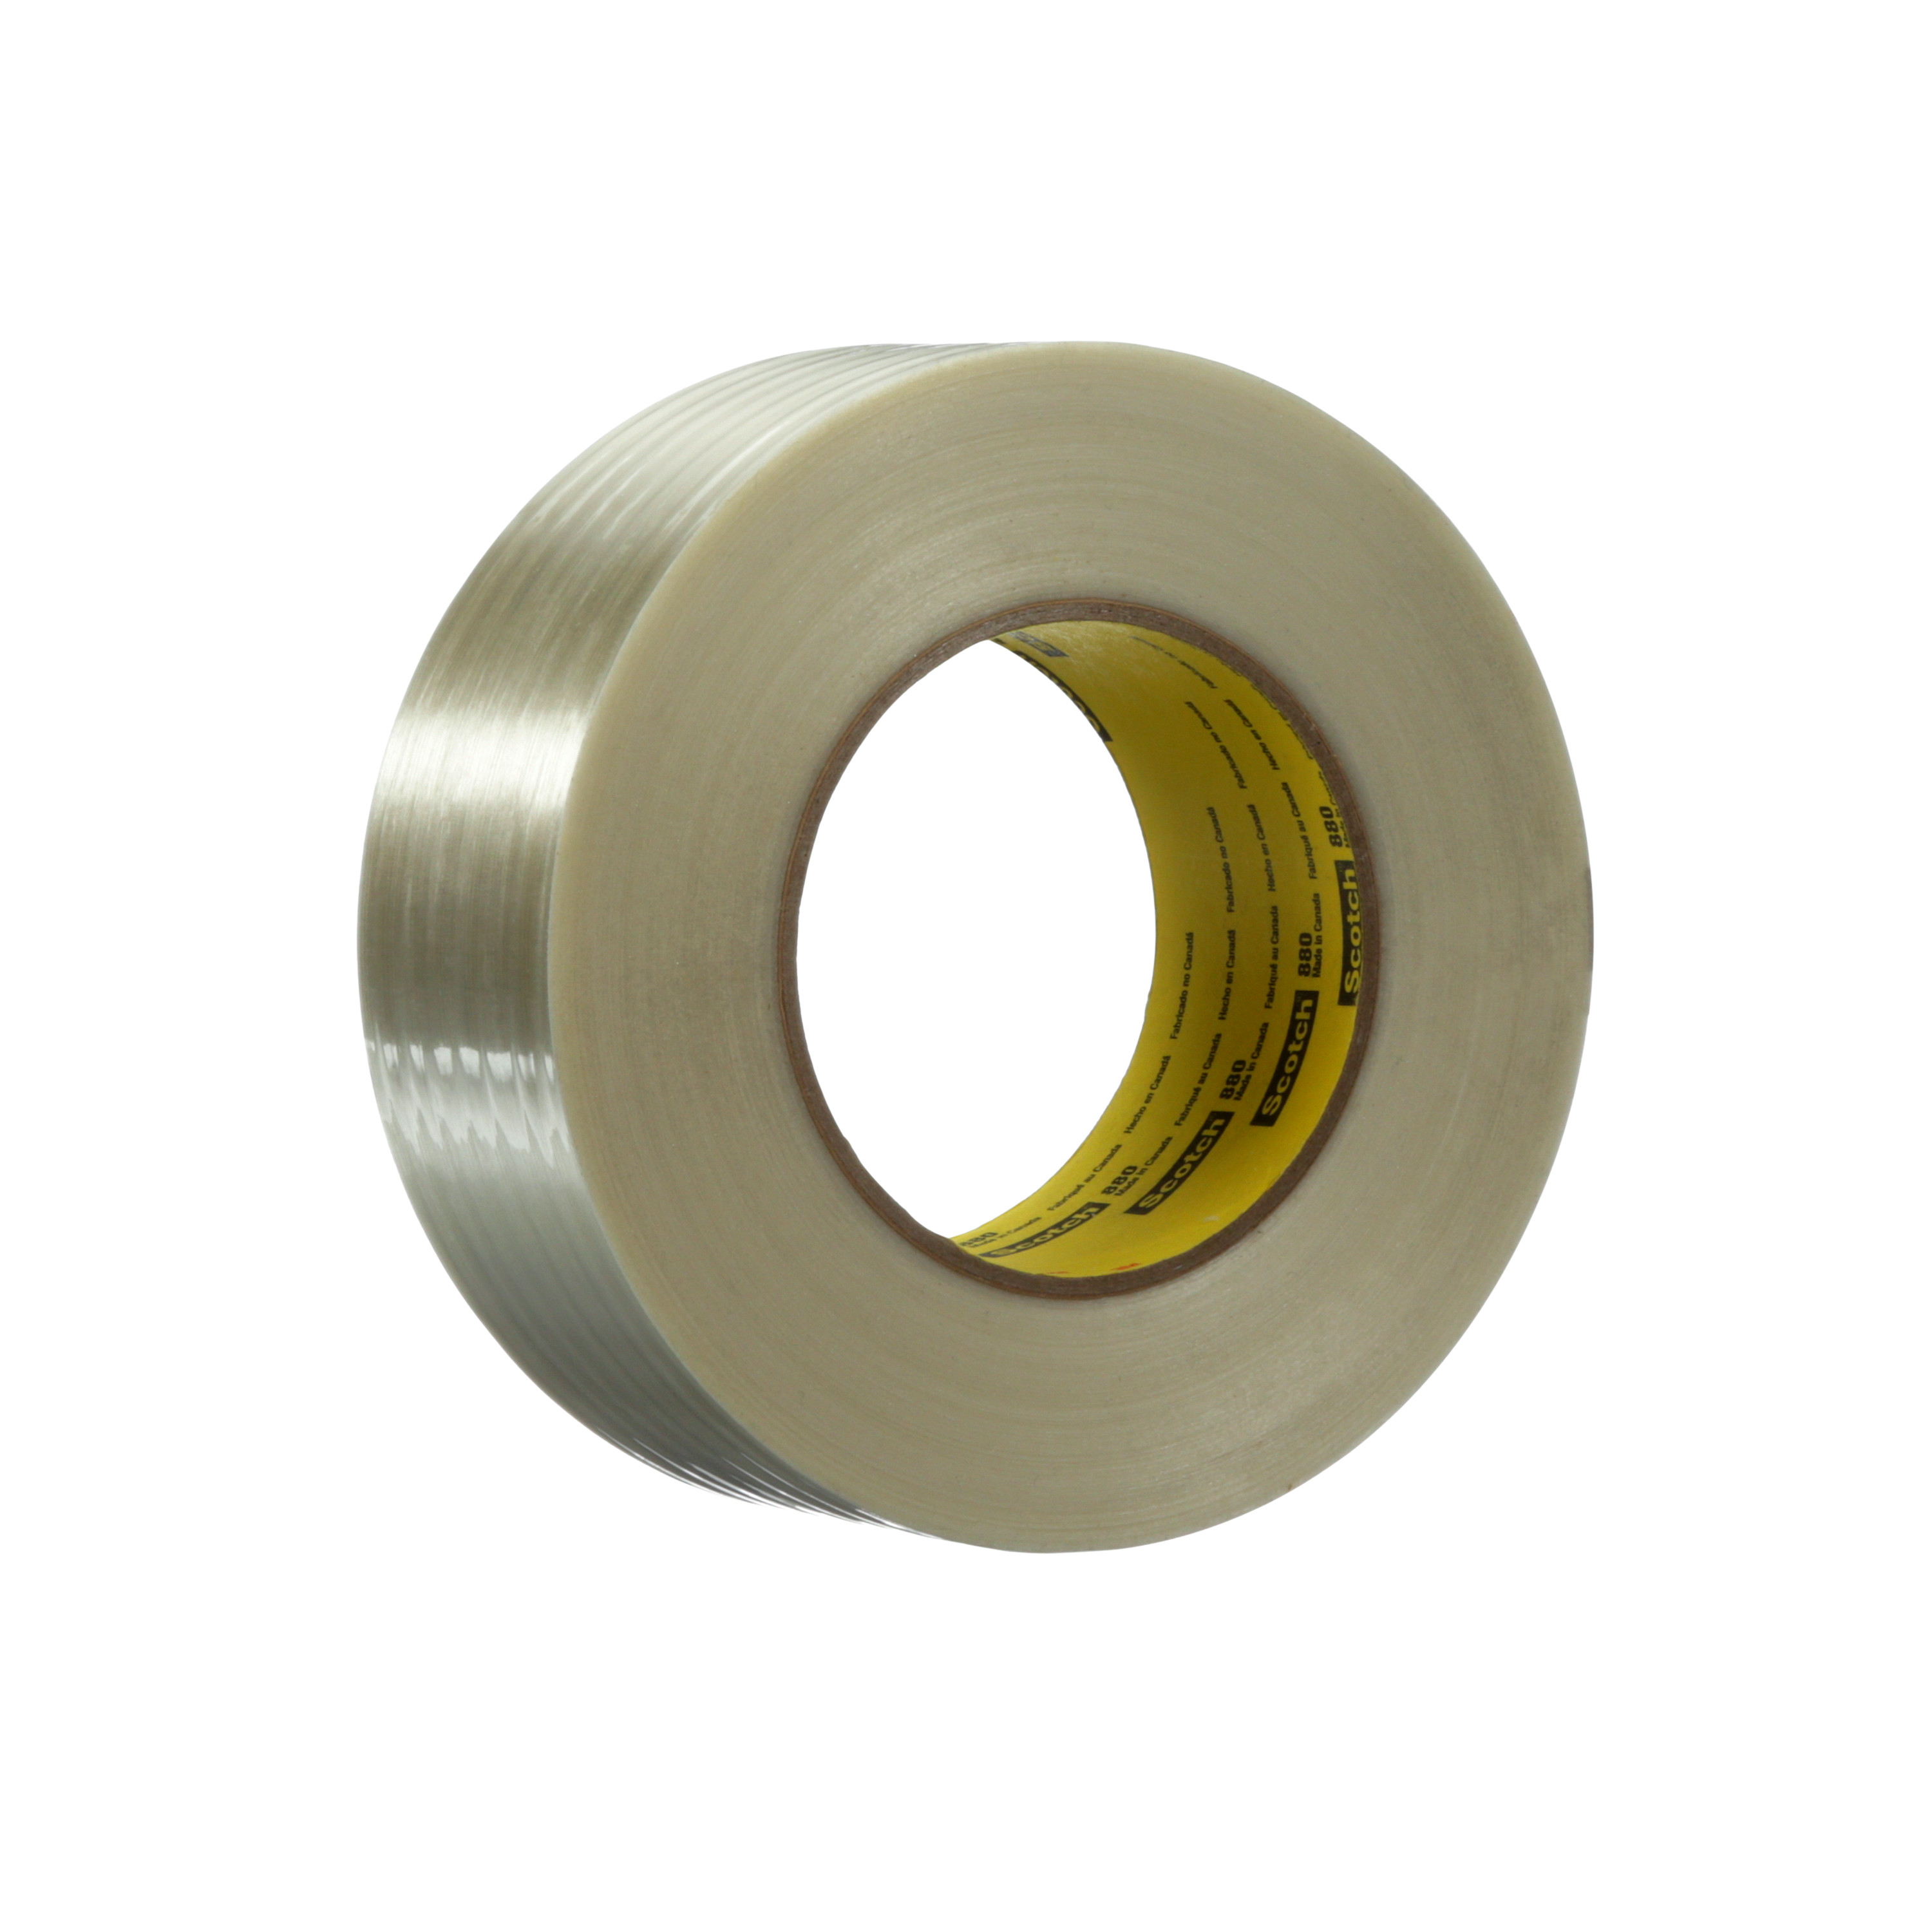 Scotch® Filament Tape 880, Clear, 48 mm x 55 m, 7.7 mil, 24 rolls per
case